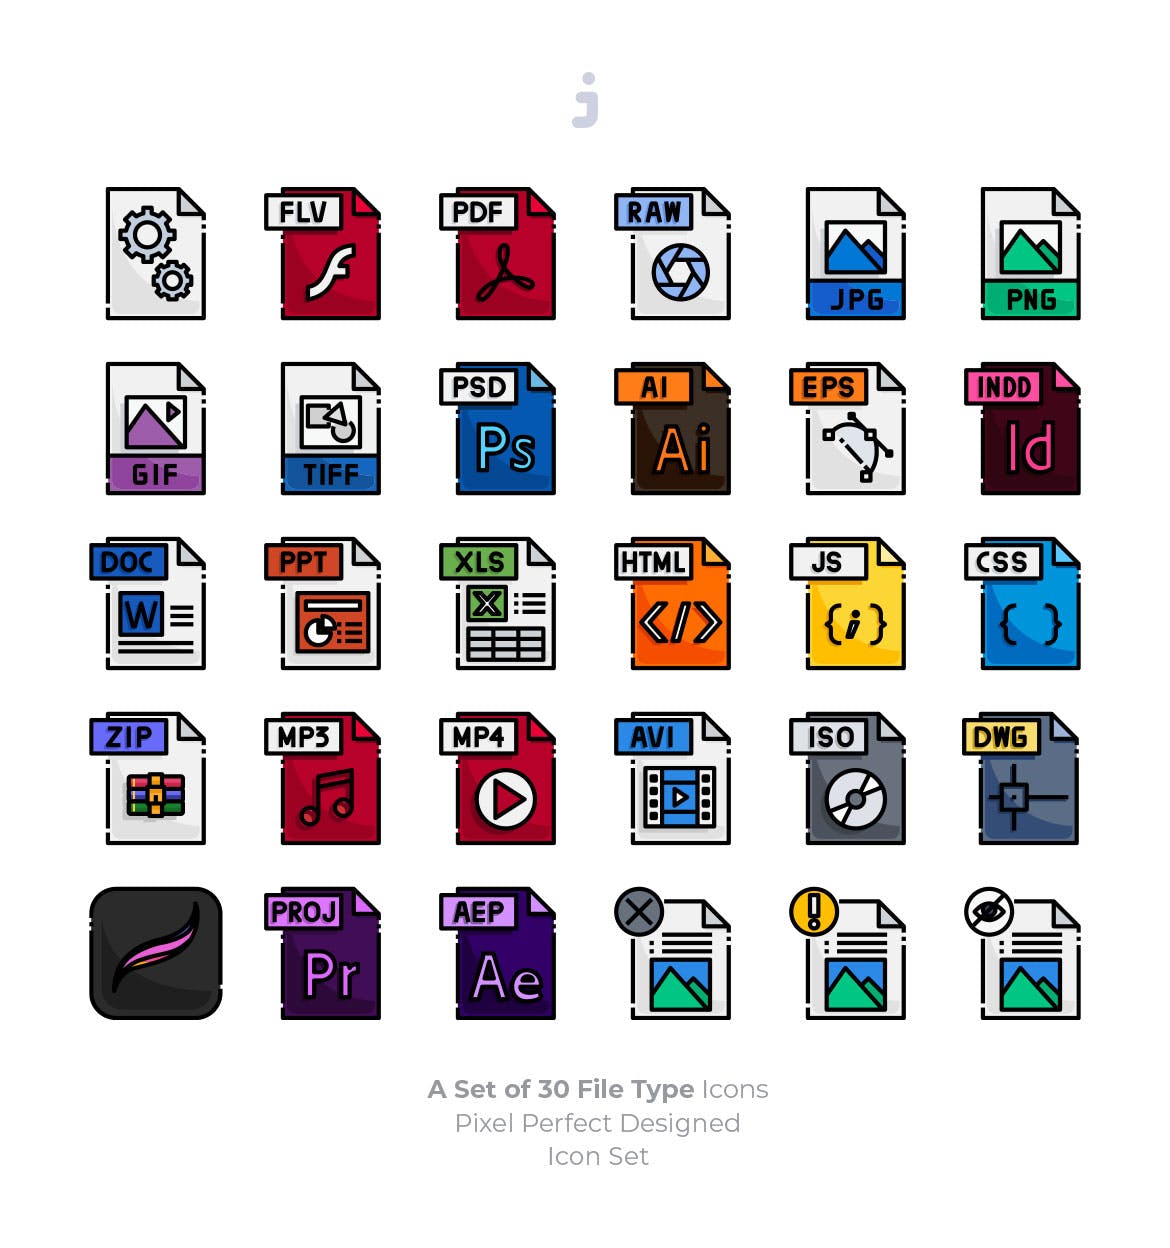 30种文件格式矢量蚂蚁素材精选图标 30 File Type Icons插图(1)